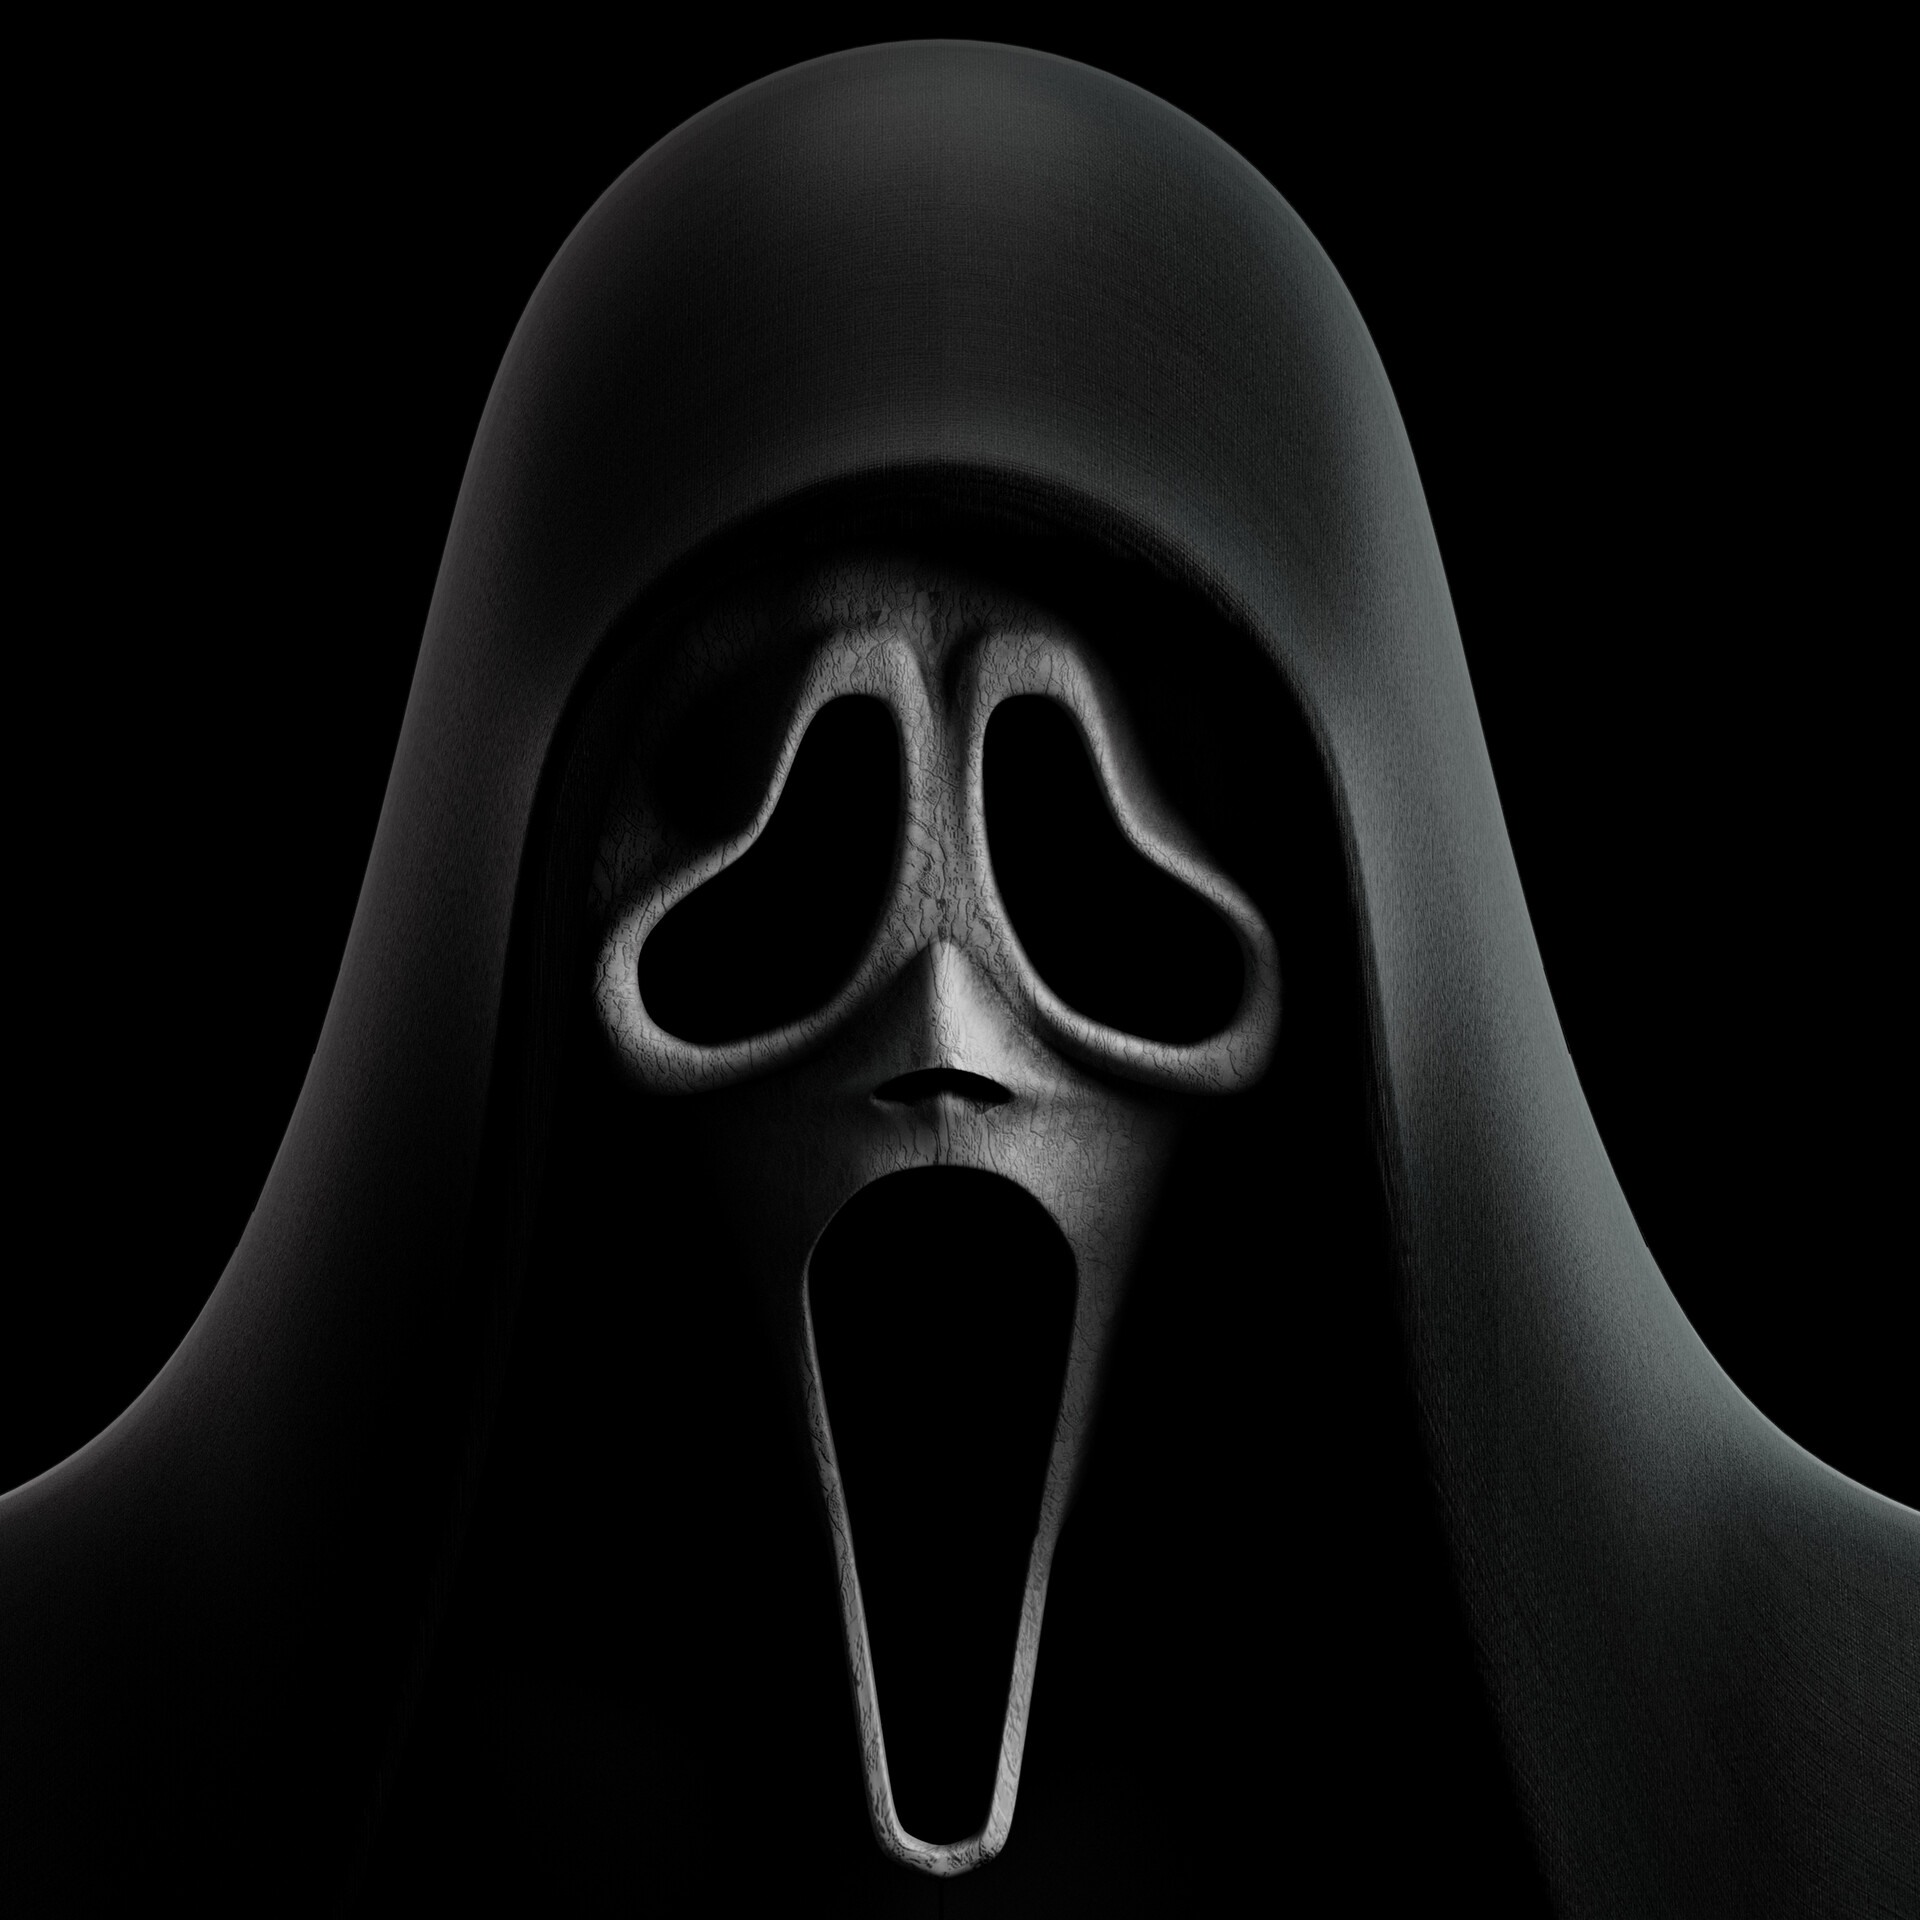 ArtStation - Ghost Face